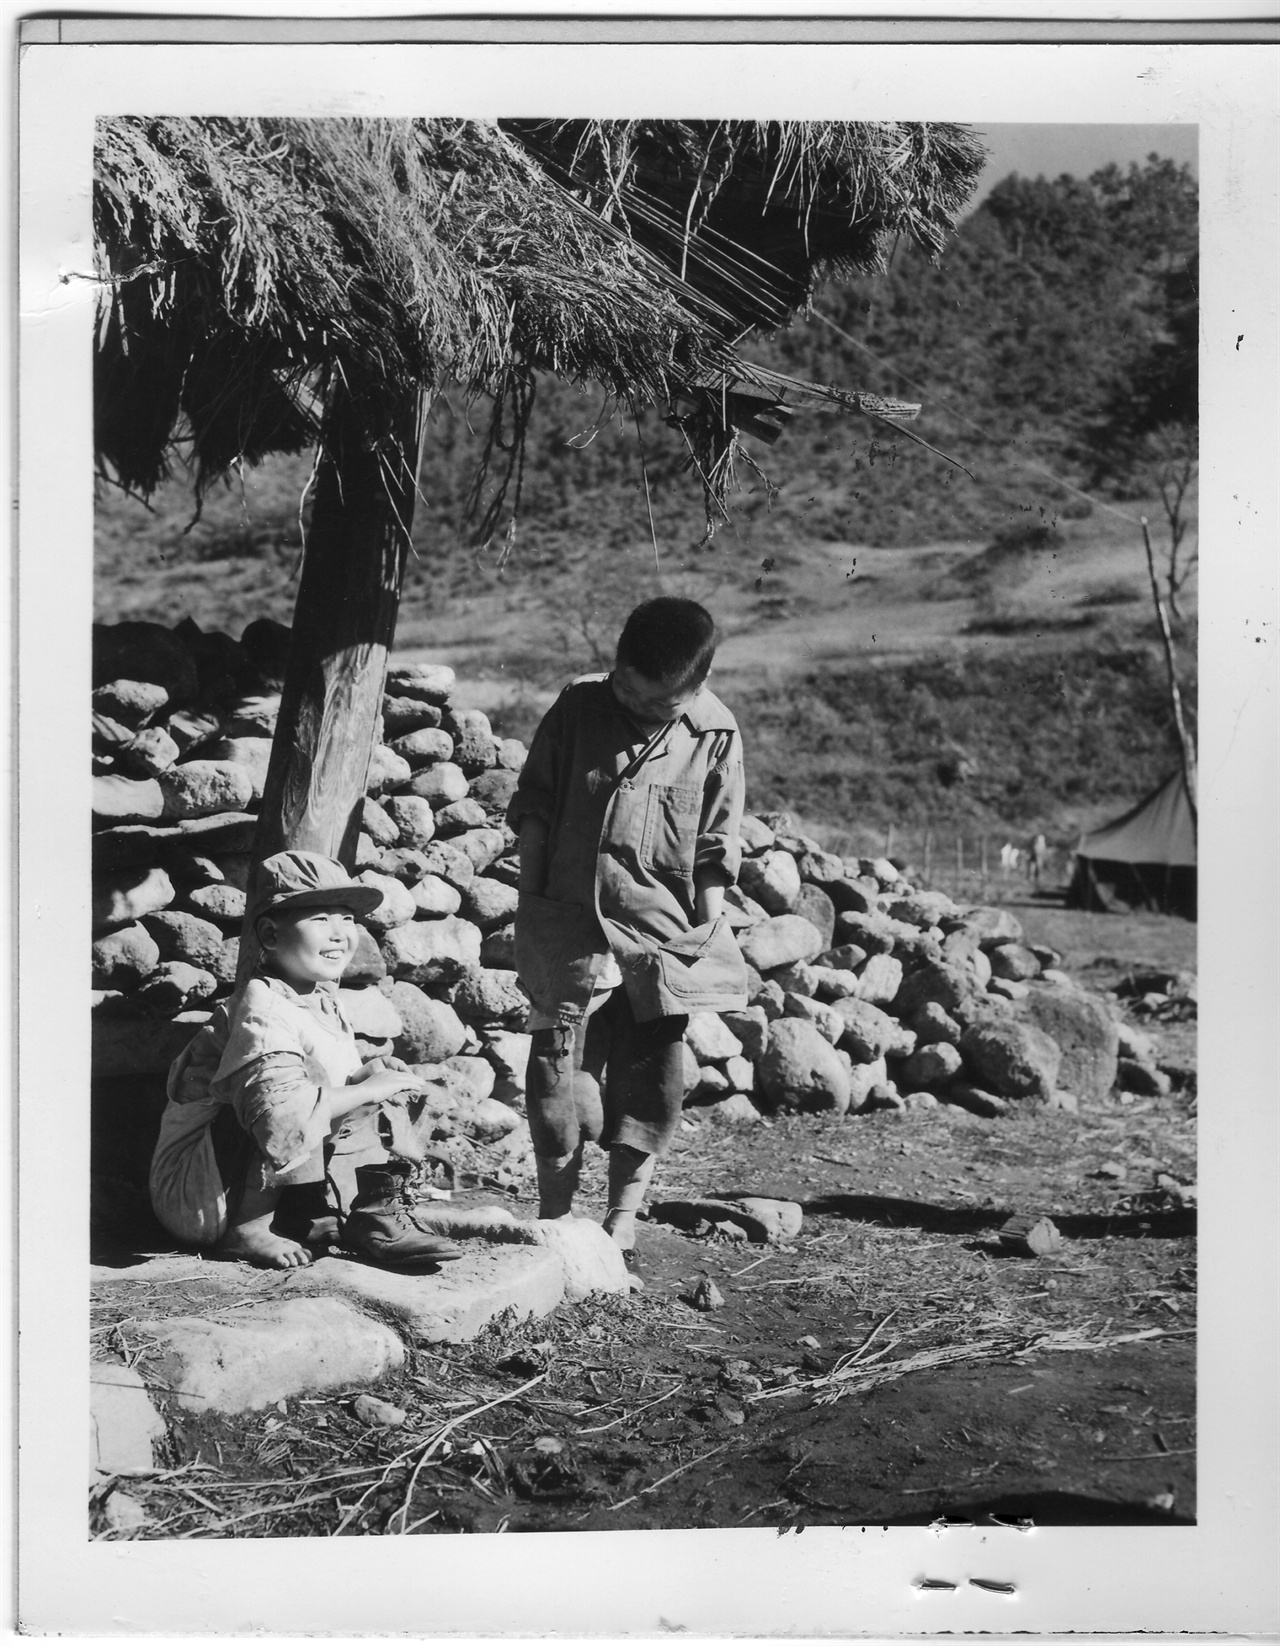  1951. 11. 18. 한 시골 초가집 양지바른 처마 밑에서 두 소년이 정답게 이야기를 나누고 있다. 어려운 가운데도 소년은 해맑은 미소를 짓고 있다. 